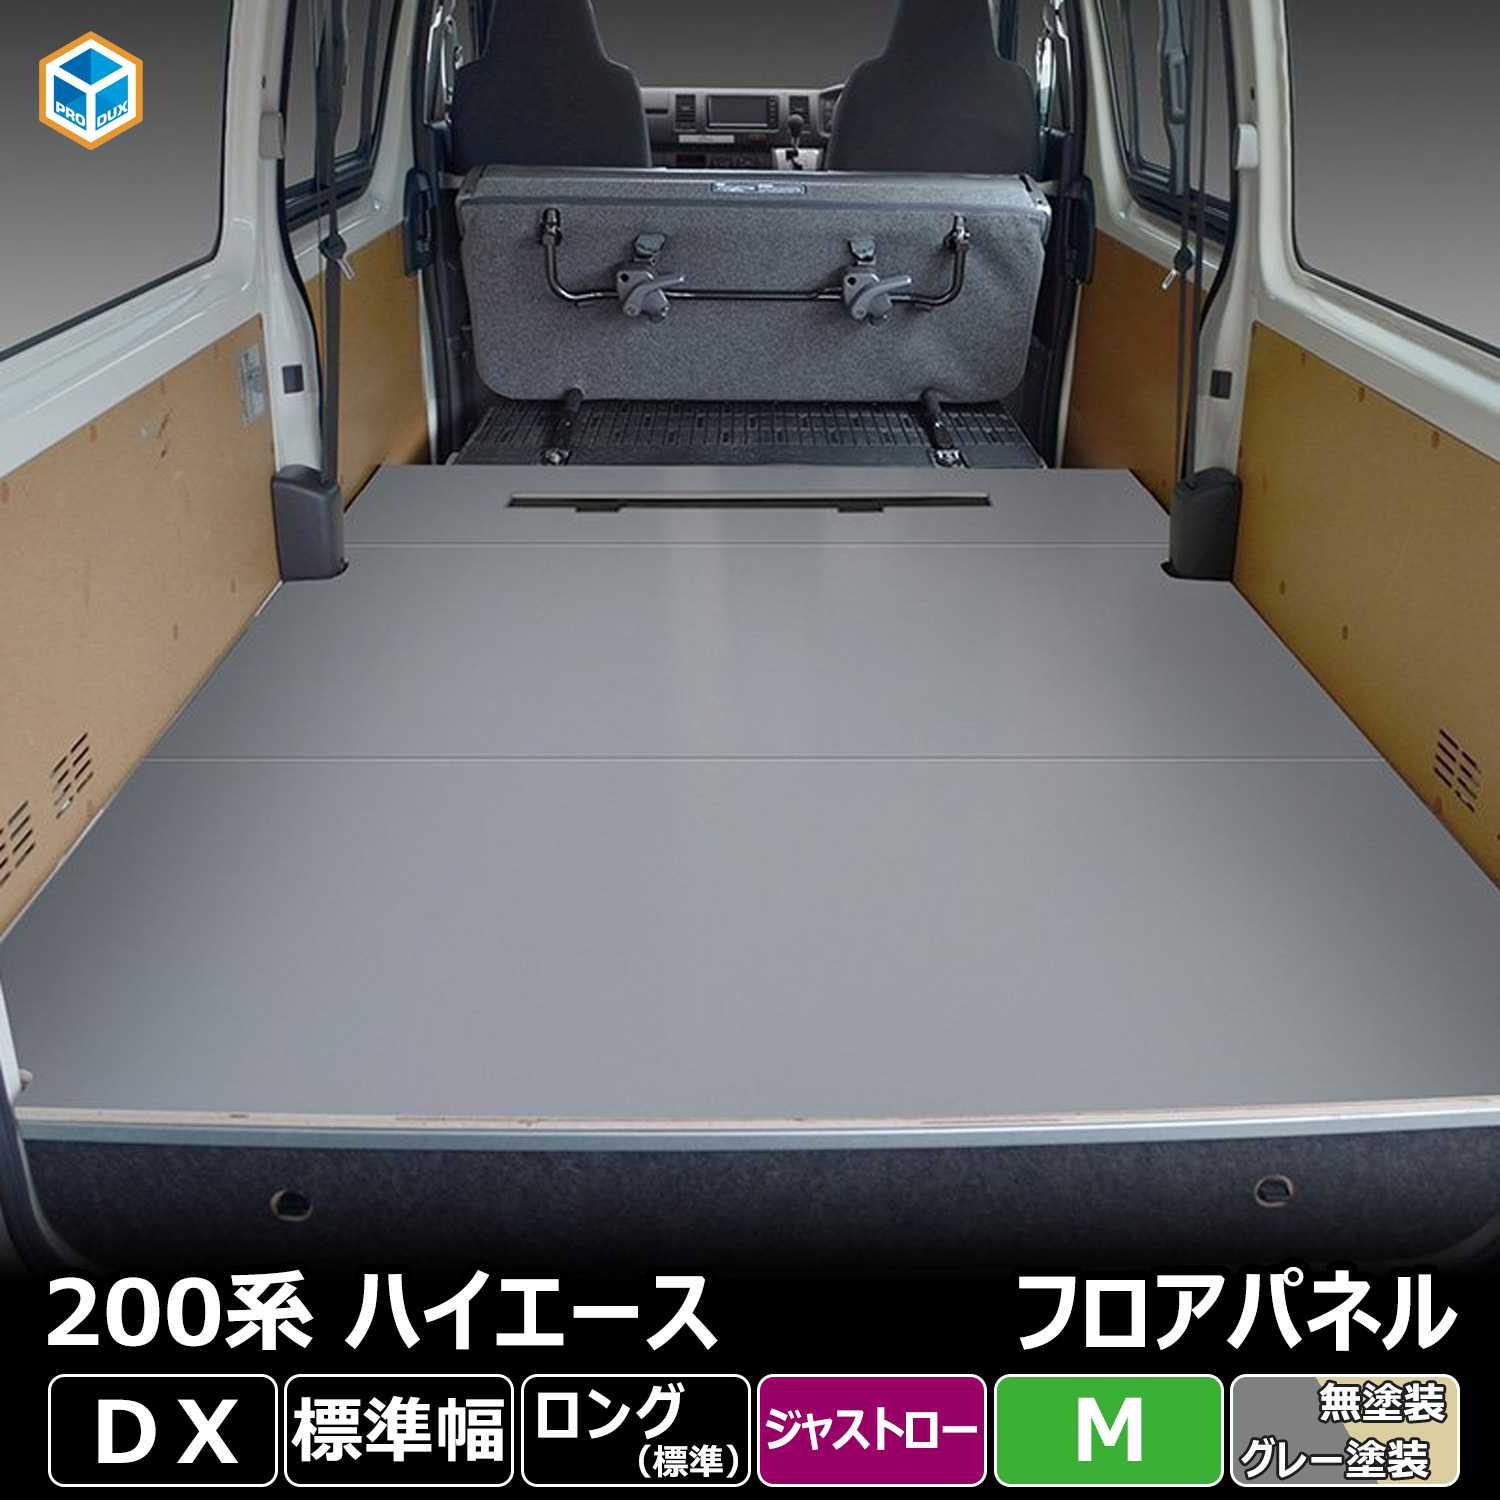 200系 ハイエース DX 標準 ジャストロー フロアパネル M | トヨタ